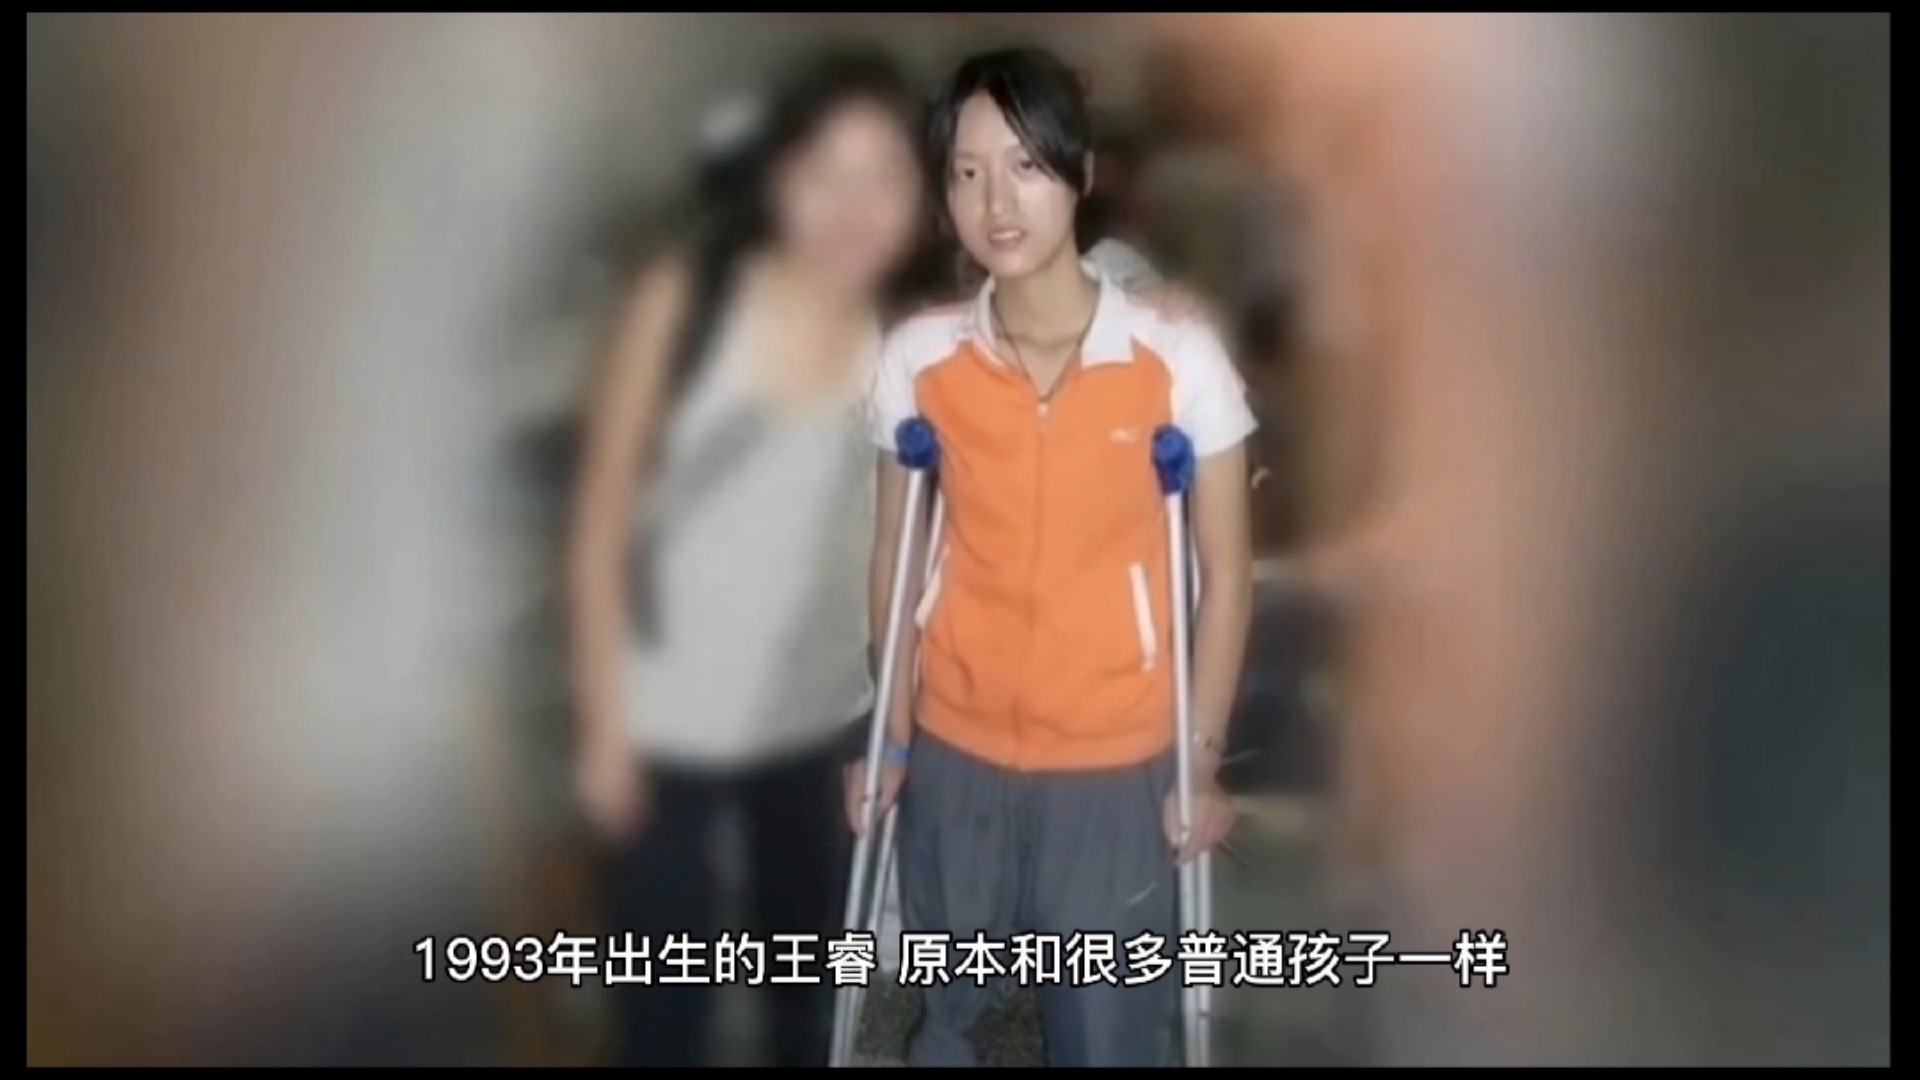 牛钰，你真漂亮！汶川地震截肢女孩牛钰，在上海时装周的T台上完成第一次走秀_假肢